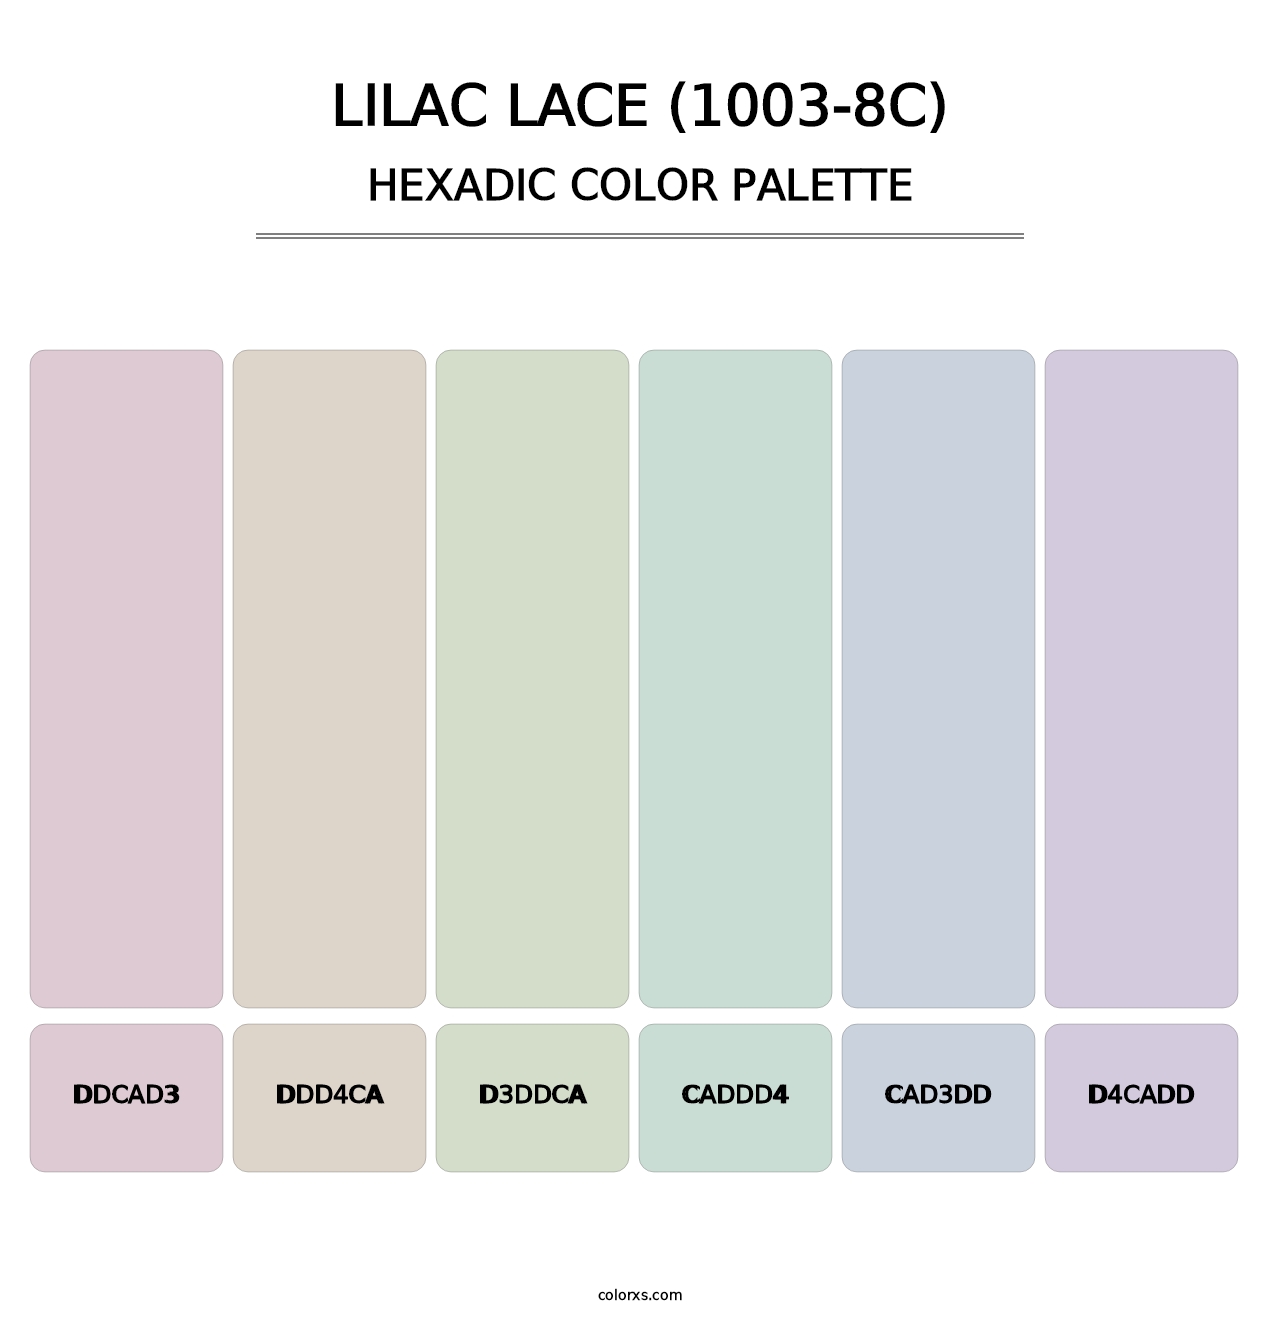 Lilac Lace (1003-8C) - Hexadic Color Palette